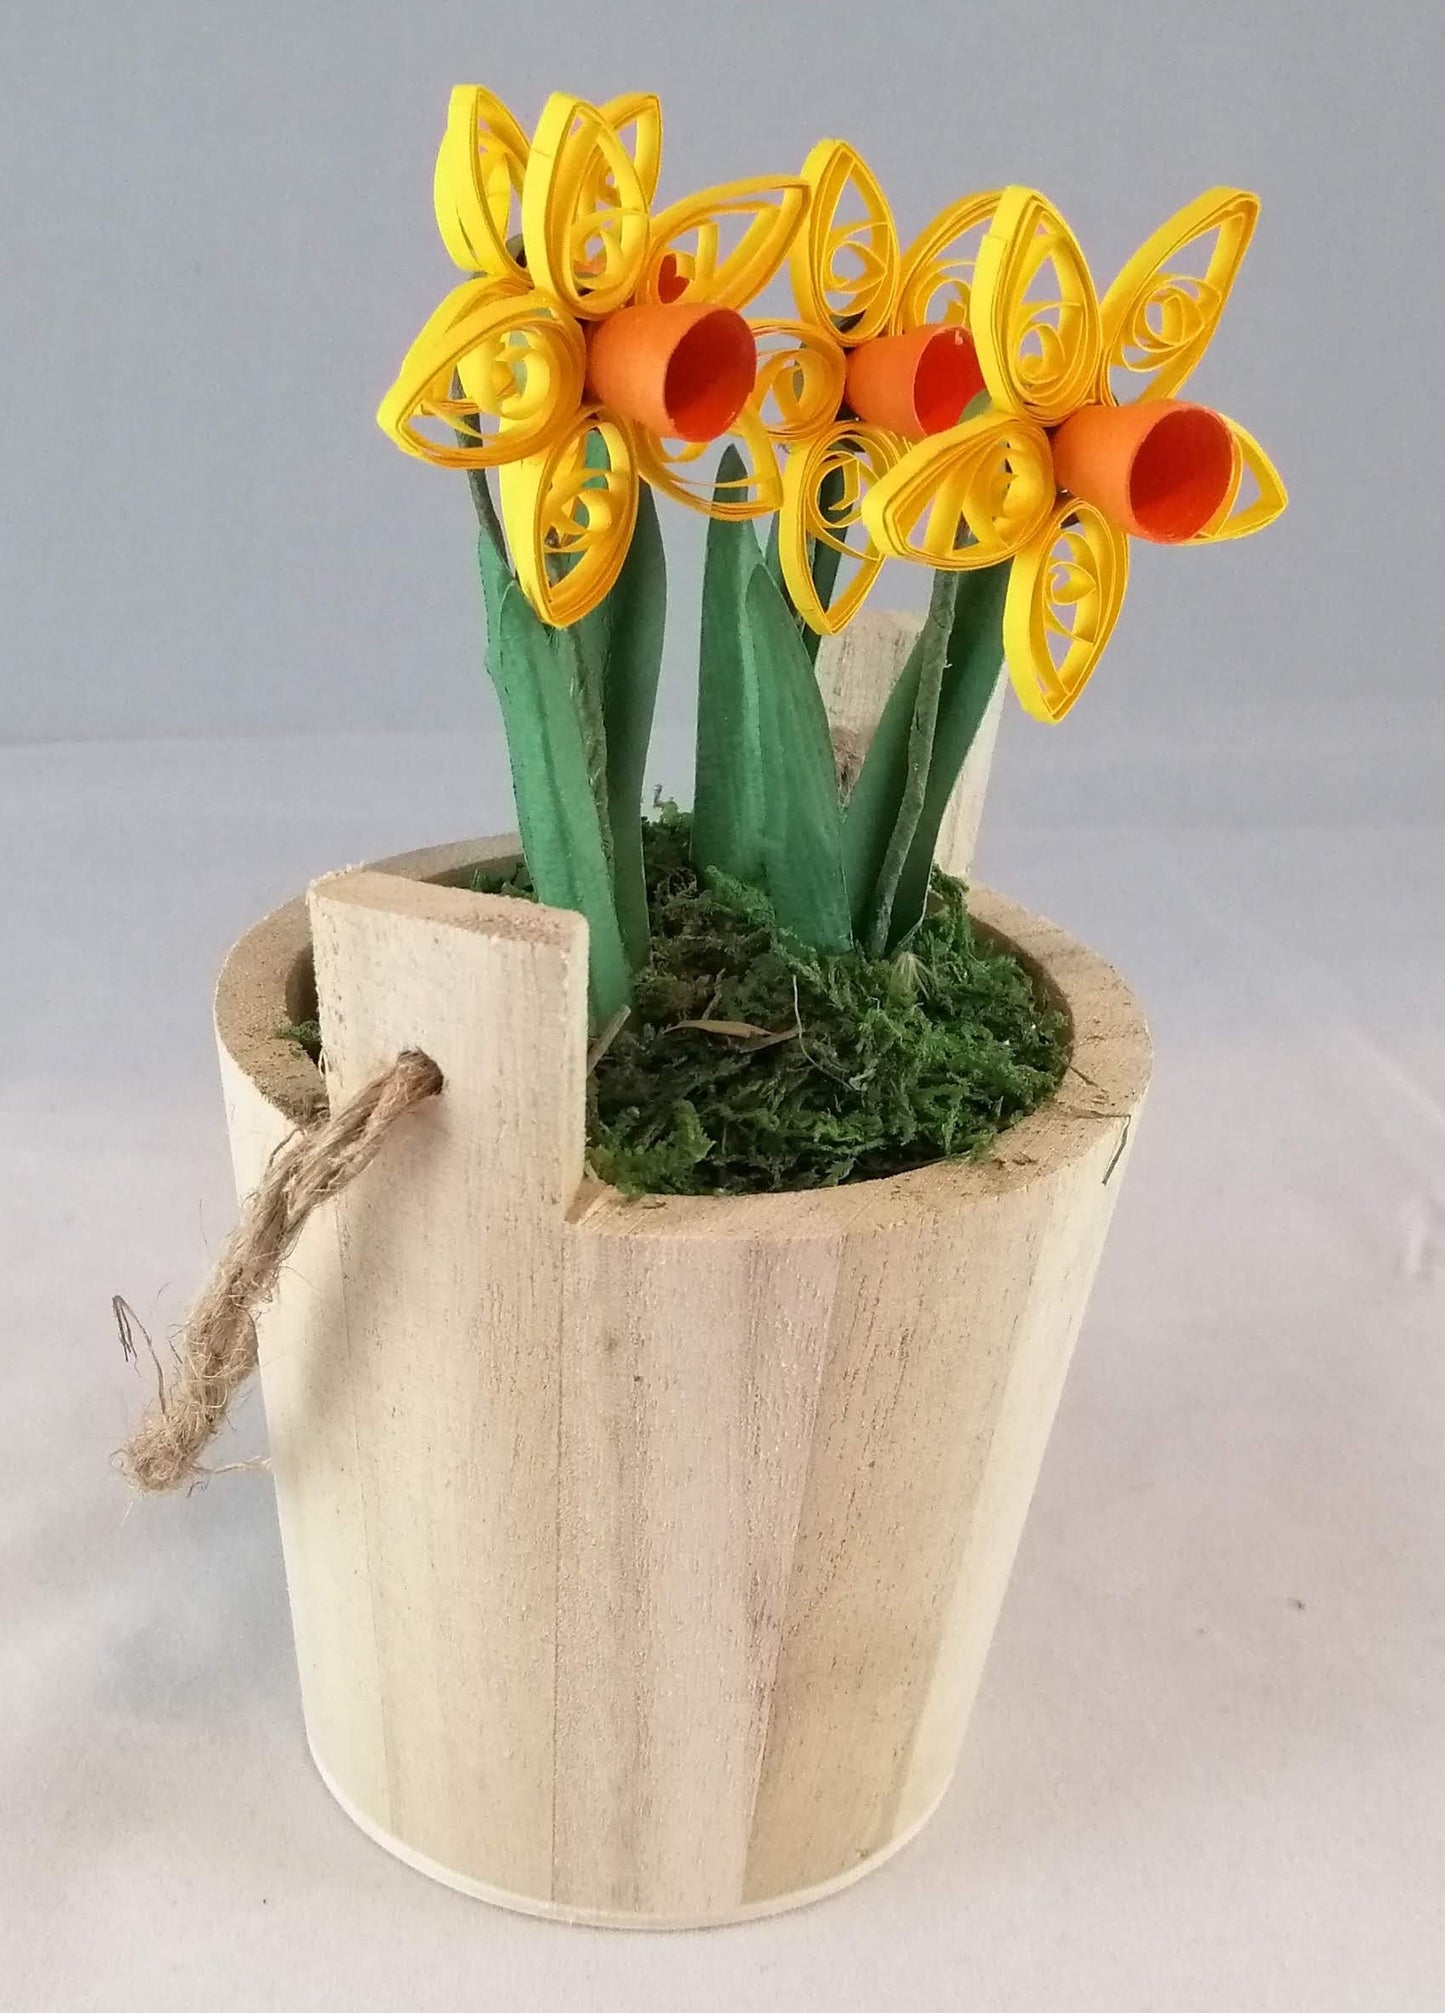 Wishing well bucket with Daffodils